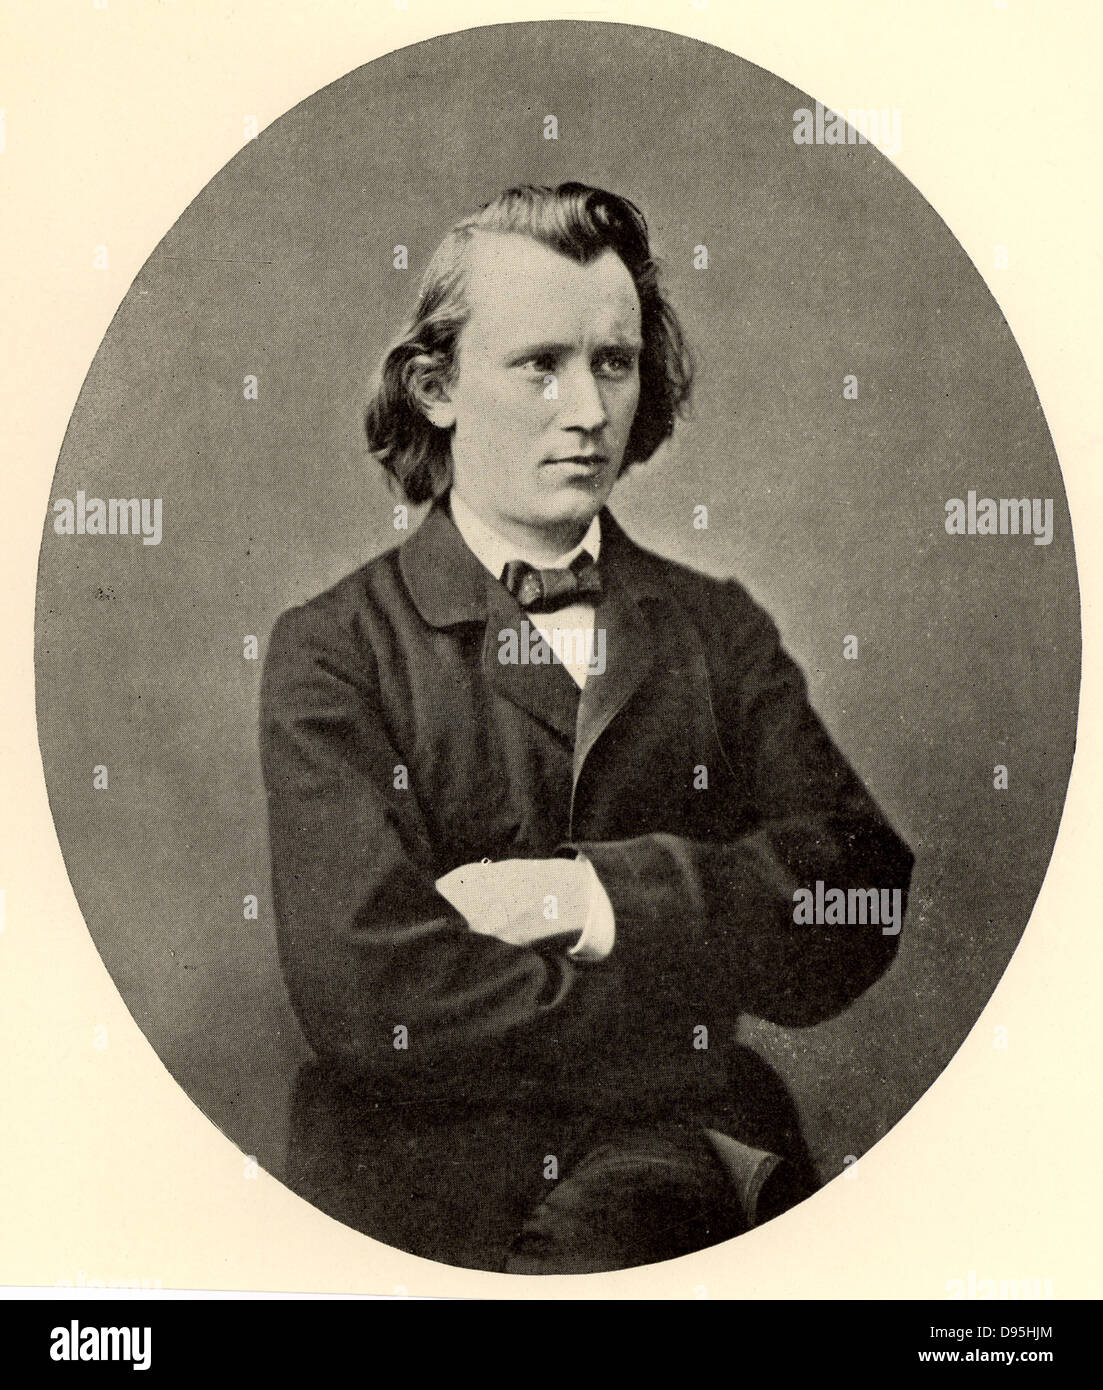 Deutschen Komponisten Johannes Brahms (1833-1897), als junger Mann. Halbton aus einem Foto. Stockfoto